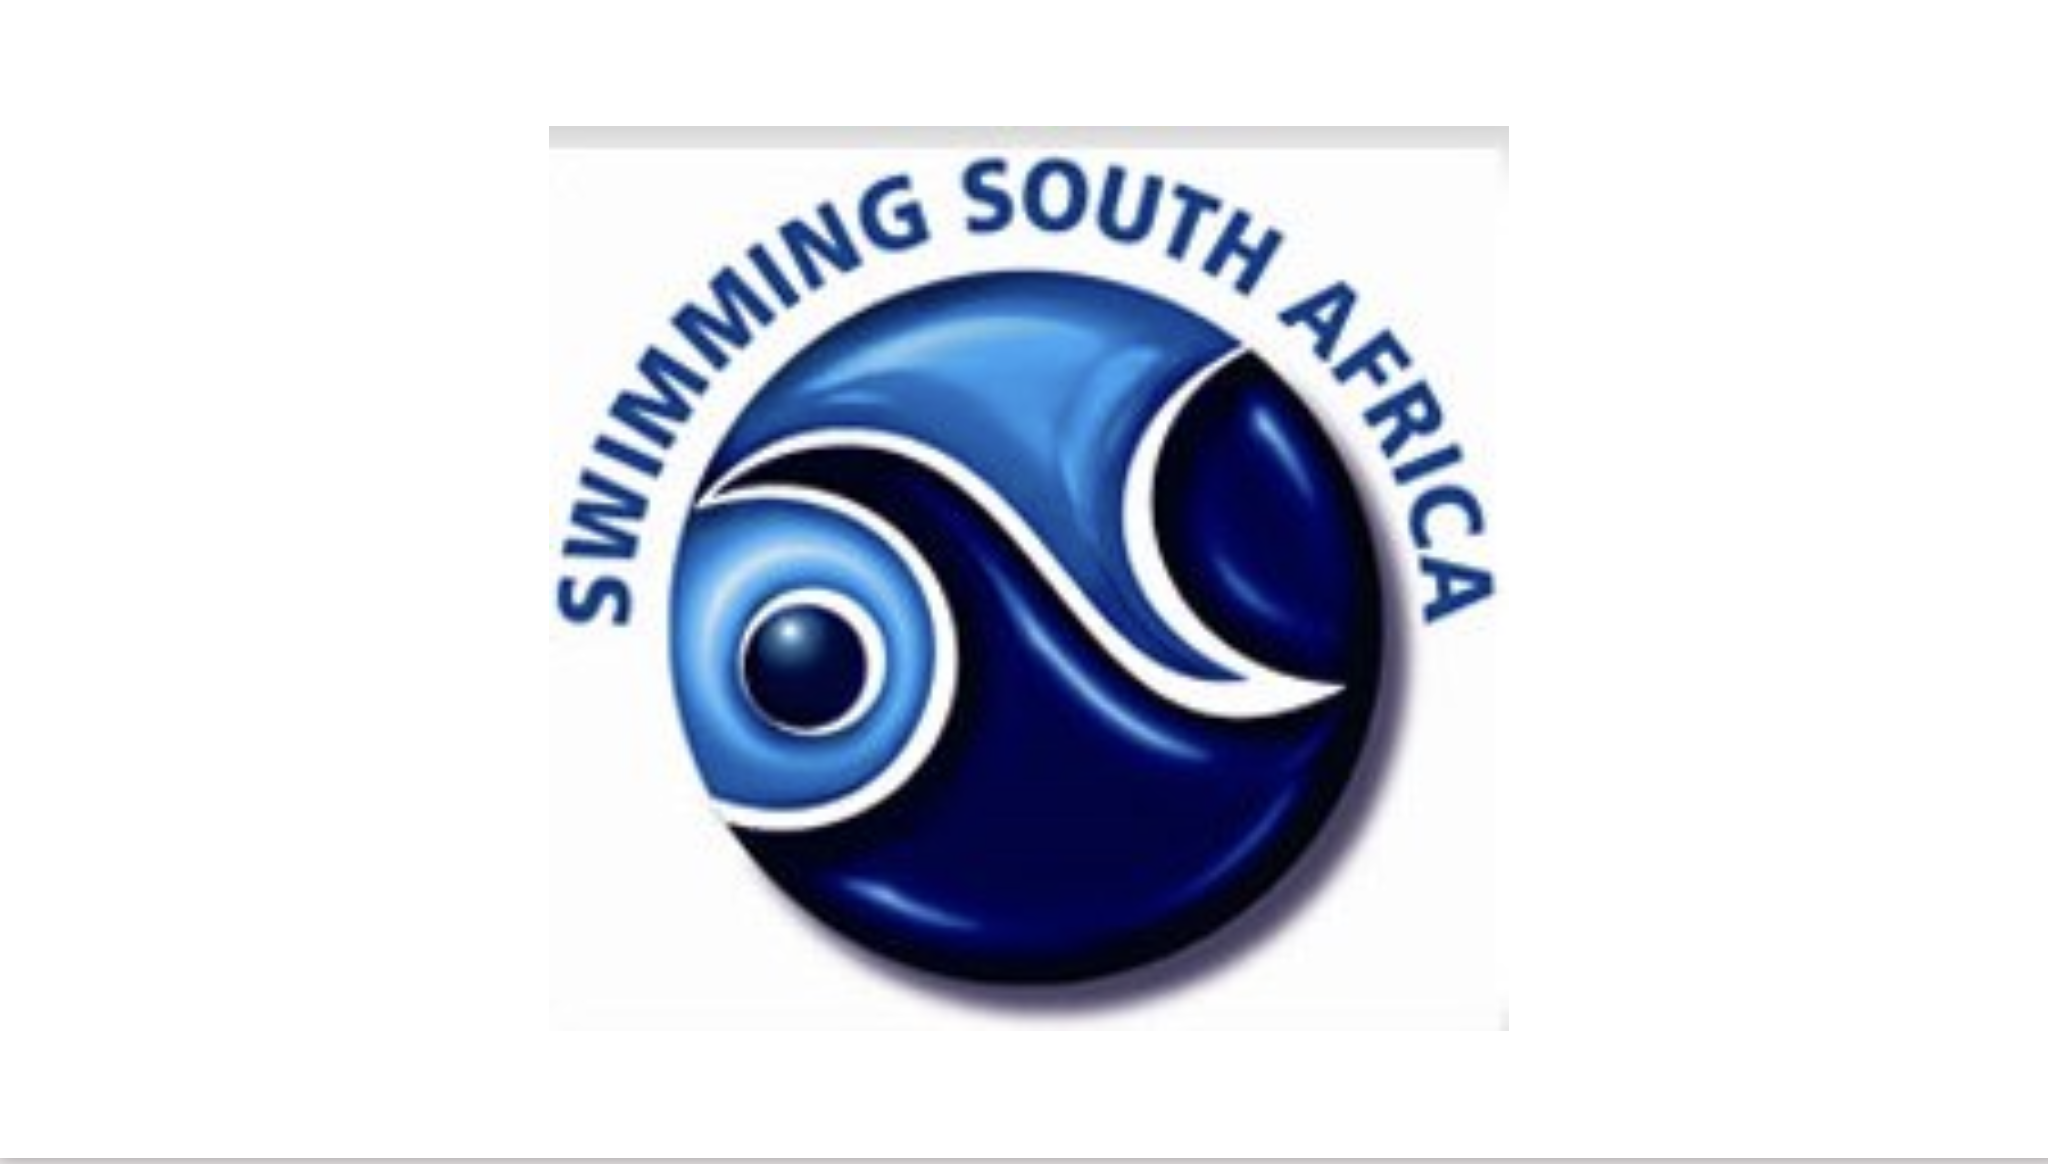 Abusi sessuali, anche il nuoto sudafricano sotto osservazione